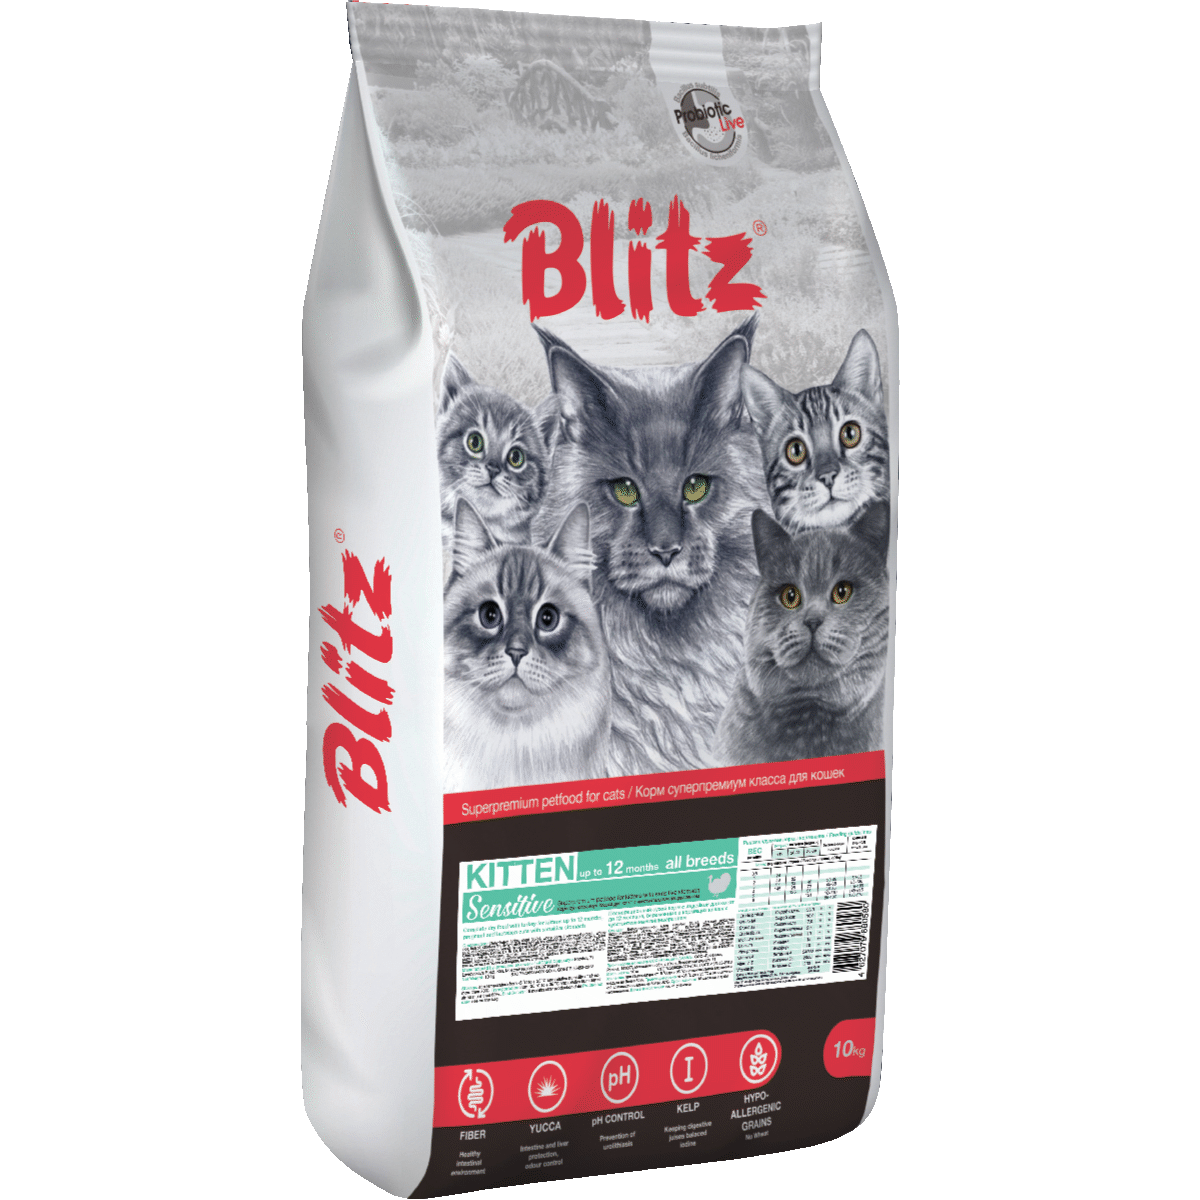 Повседневный корм Blitz для кошки